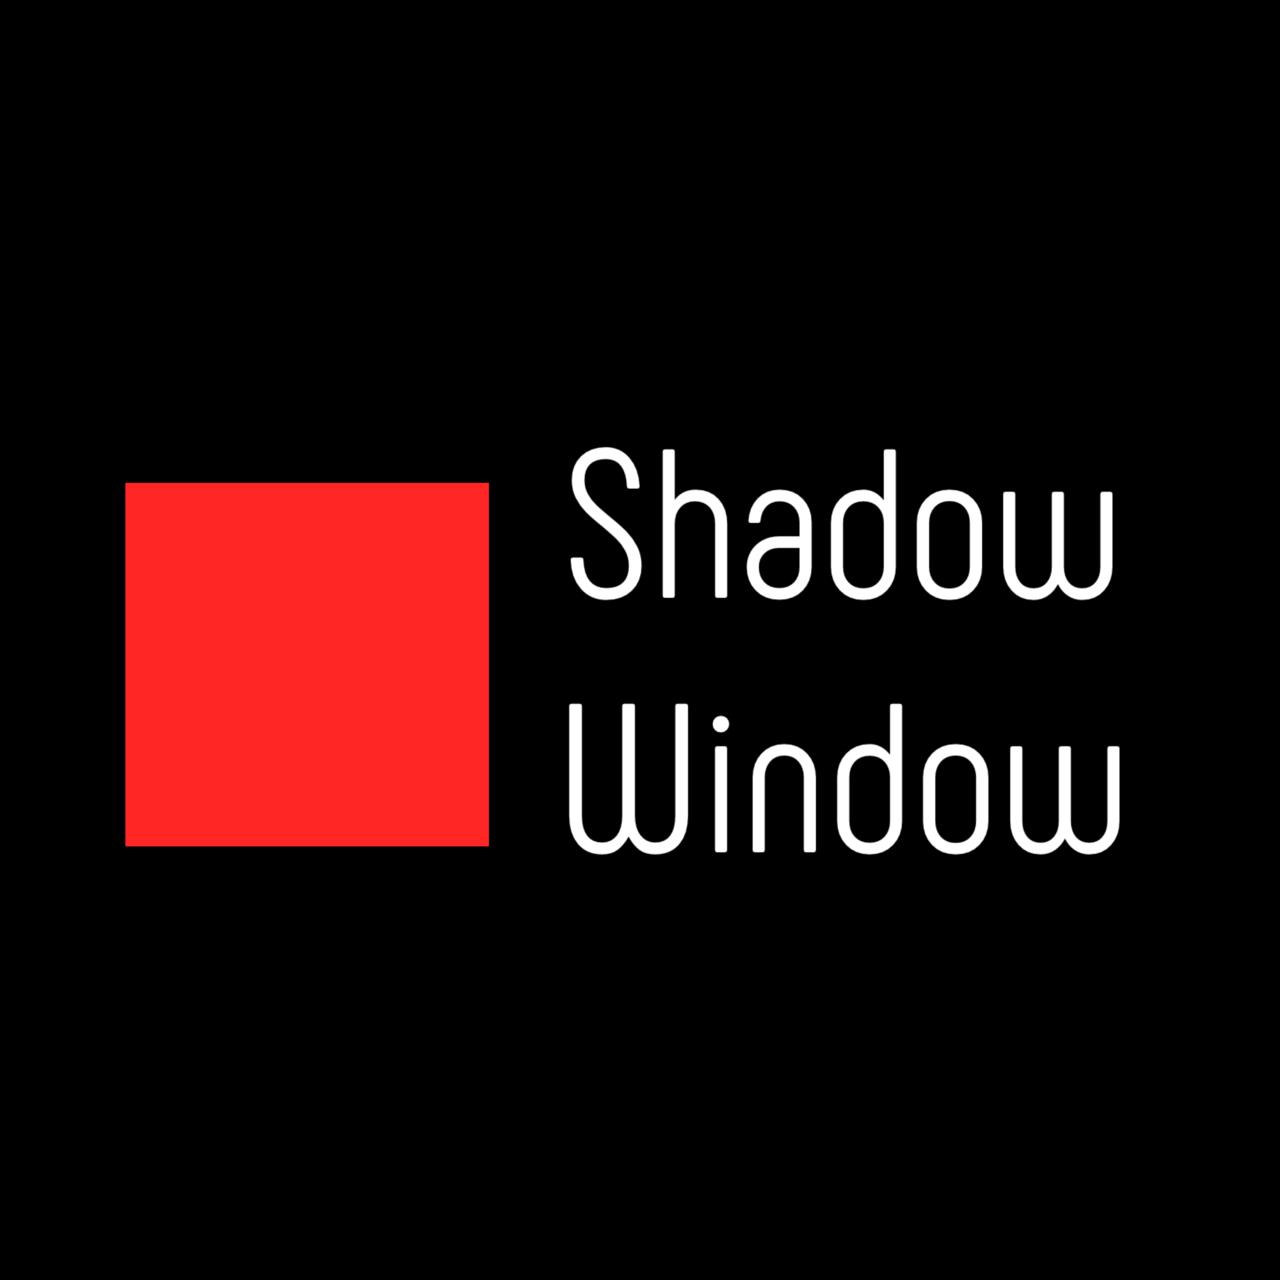 Sultan Orazaly - Shadow Window